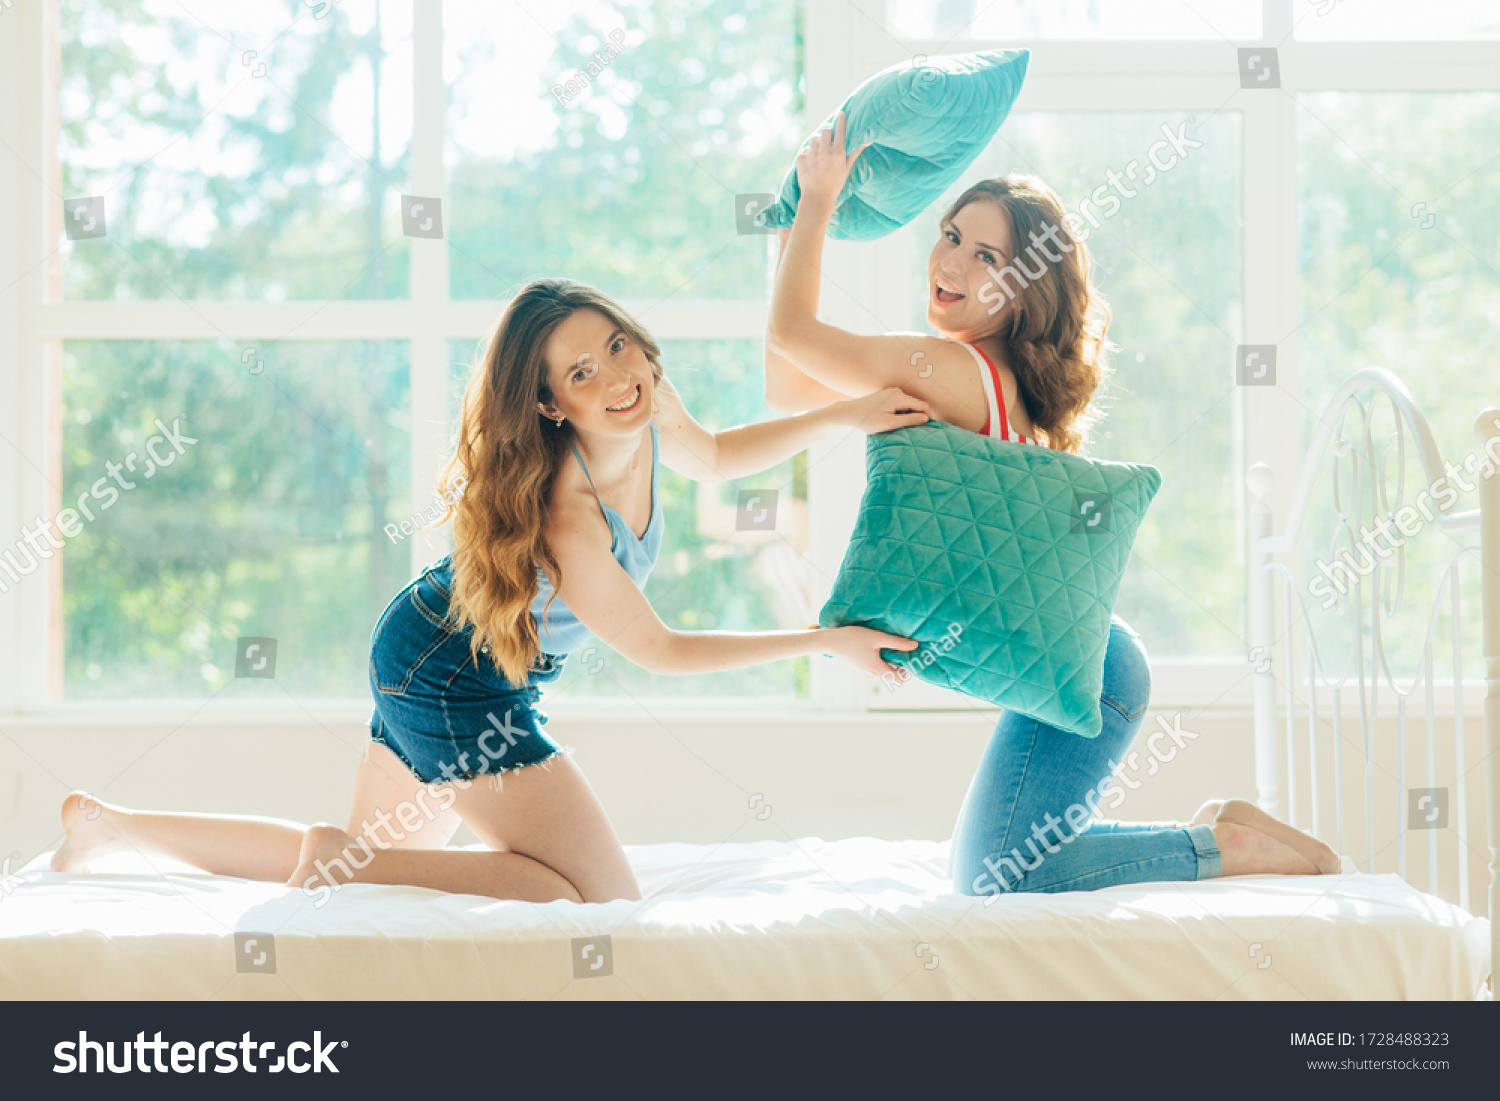 cassandra plummer add photo hot lesbians having fun